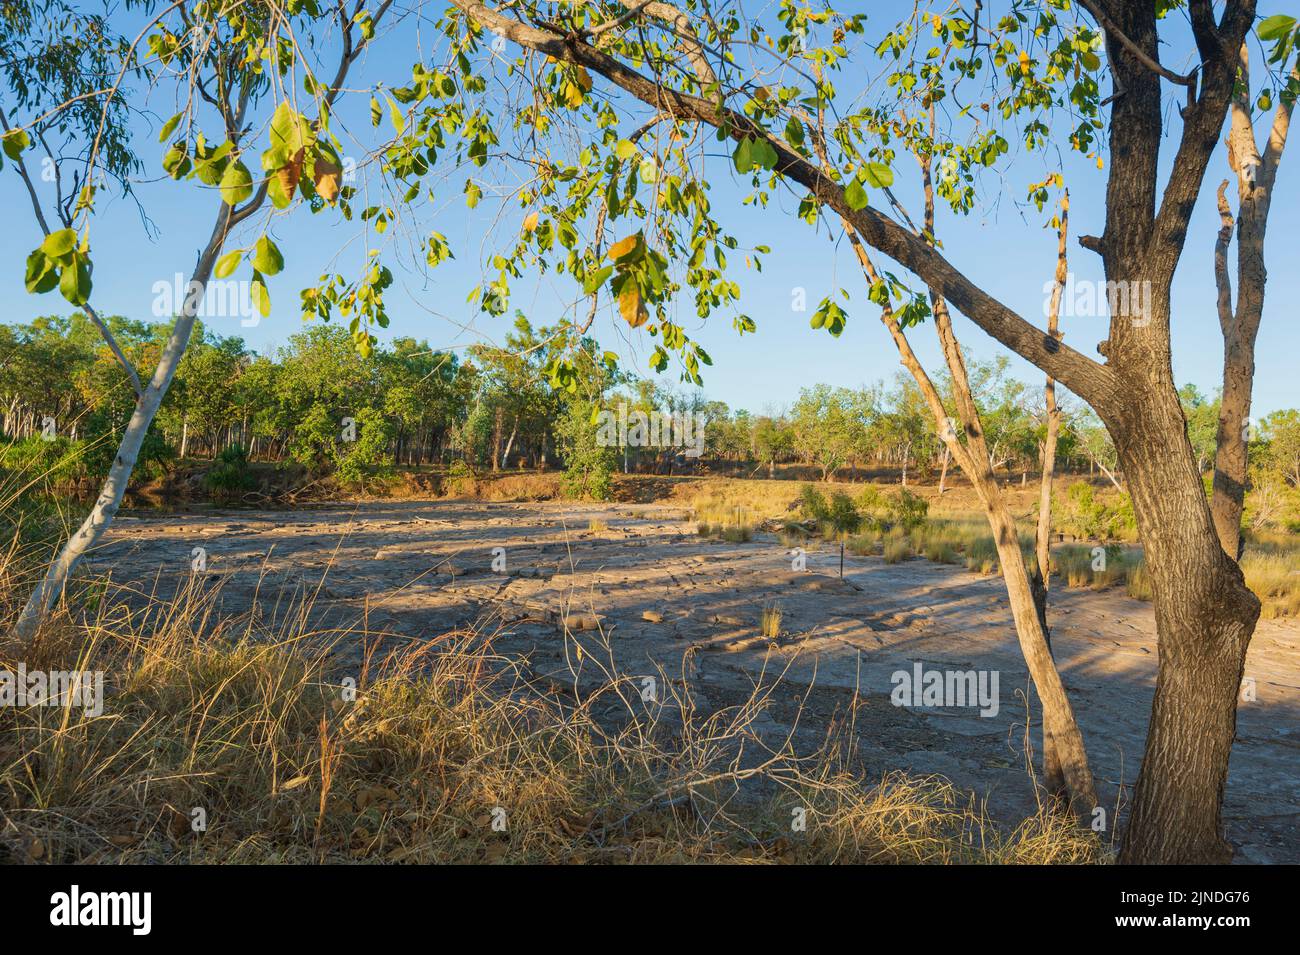 El lecho seco del río East Baines en el Parque Nacional Judbarra/Gregory, Territorio del Norte, Territorio del Norte, Australia Foto de stock